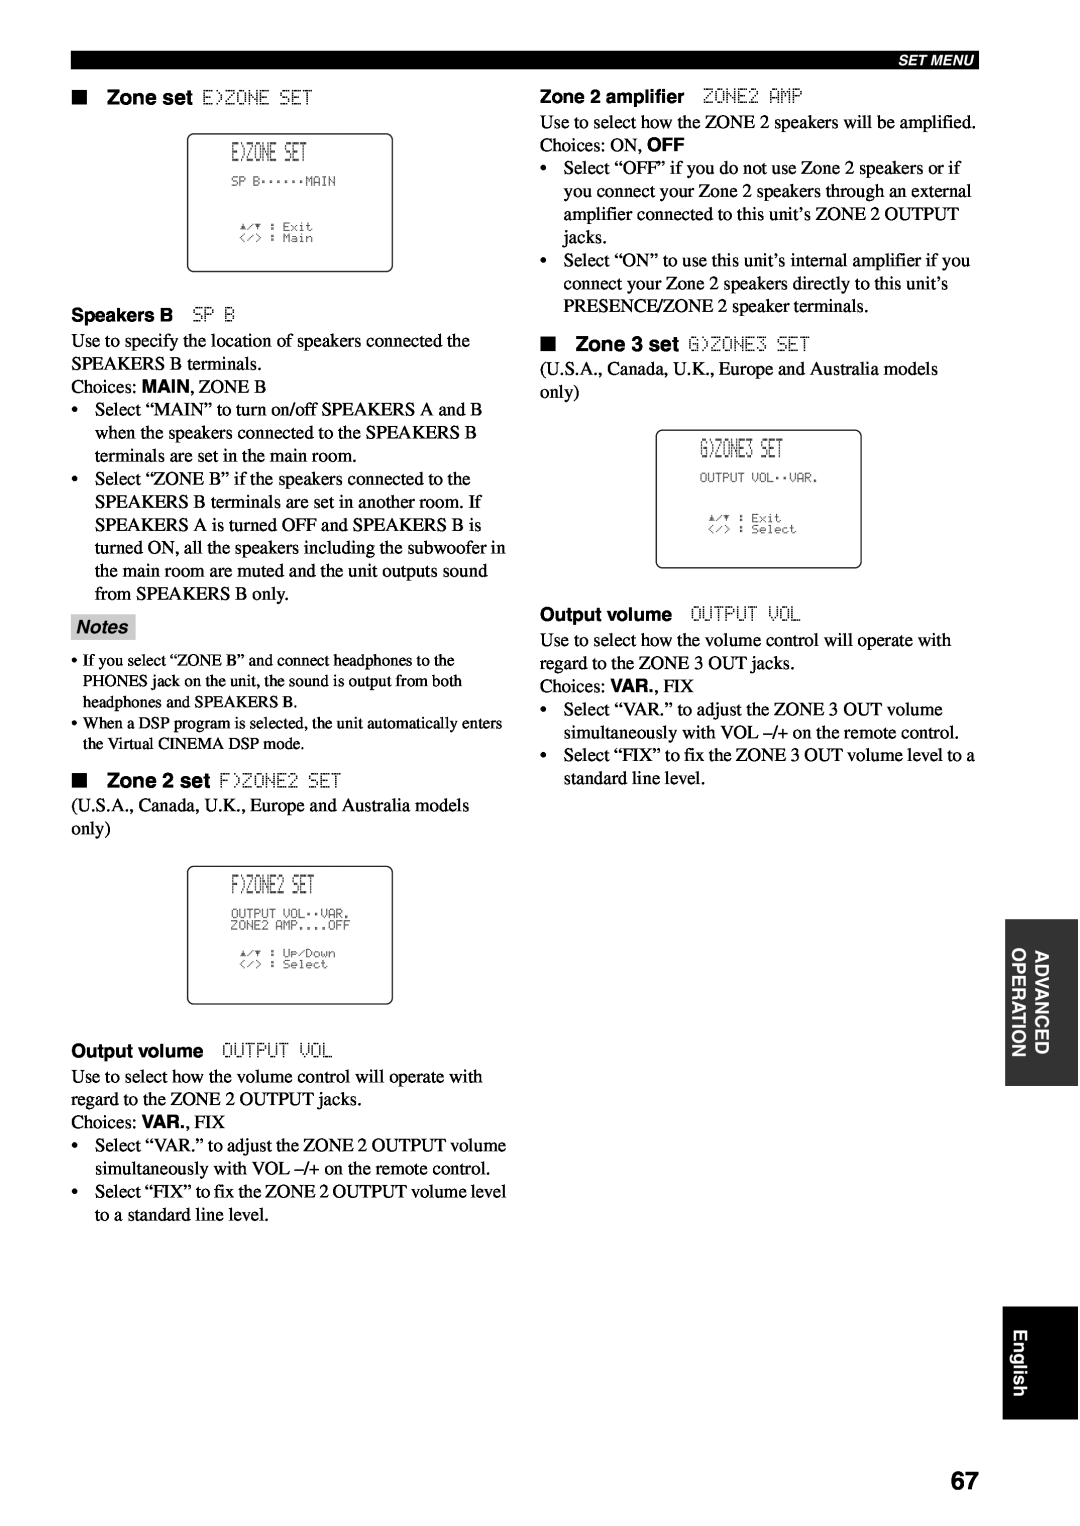 Yamaha RX-V1500 owner manual Ezone Set, Zone 2 set FZONE2 SET, Zone 3 set GZONE3 SET, Notes 